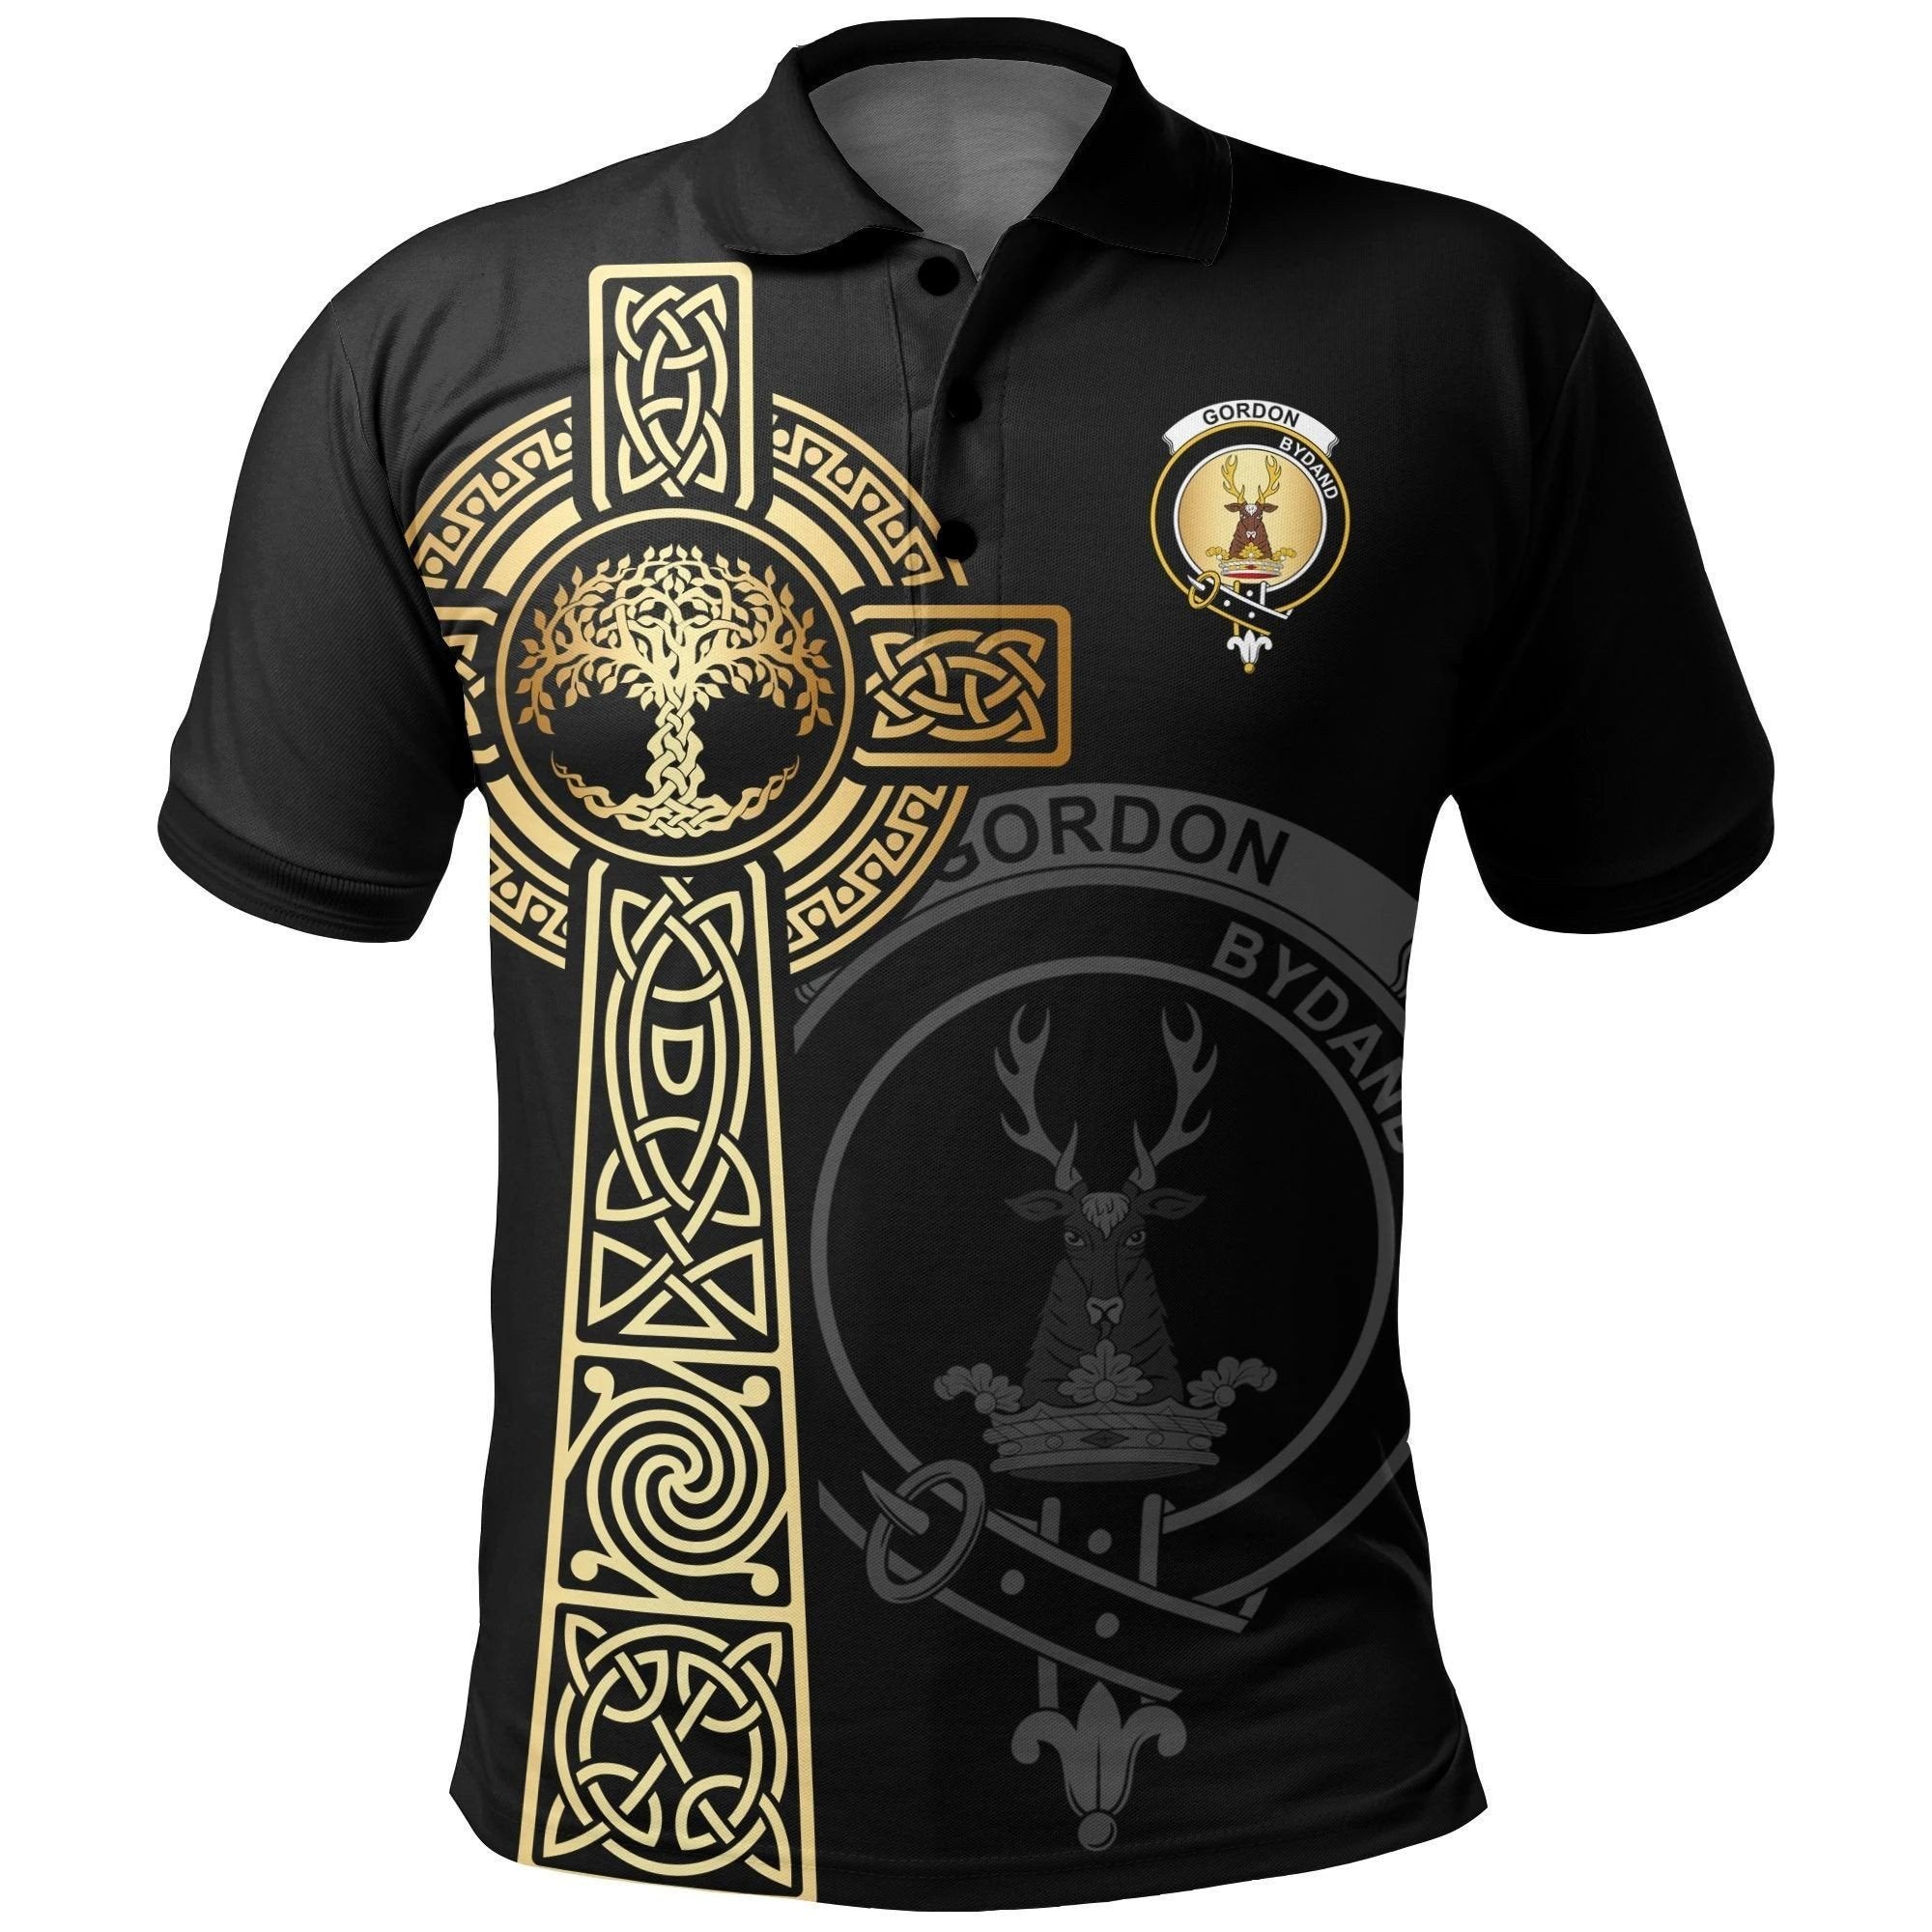 Gordon Clan Polo Shirt, Scottish Tartan Gordon Clans Polo Shirt Tree Of Life Style